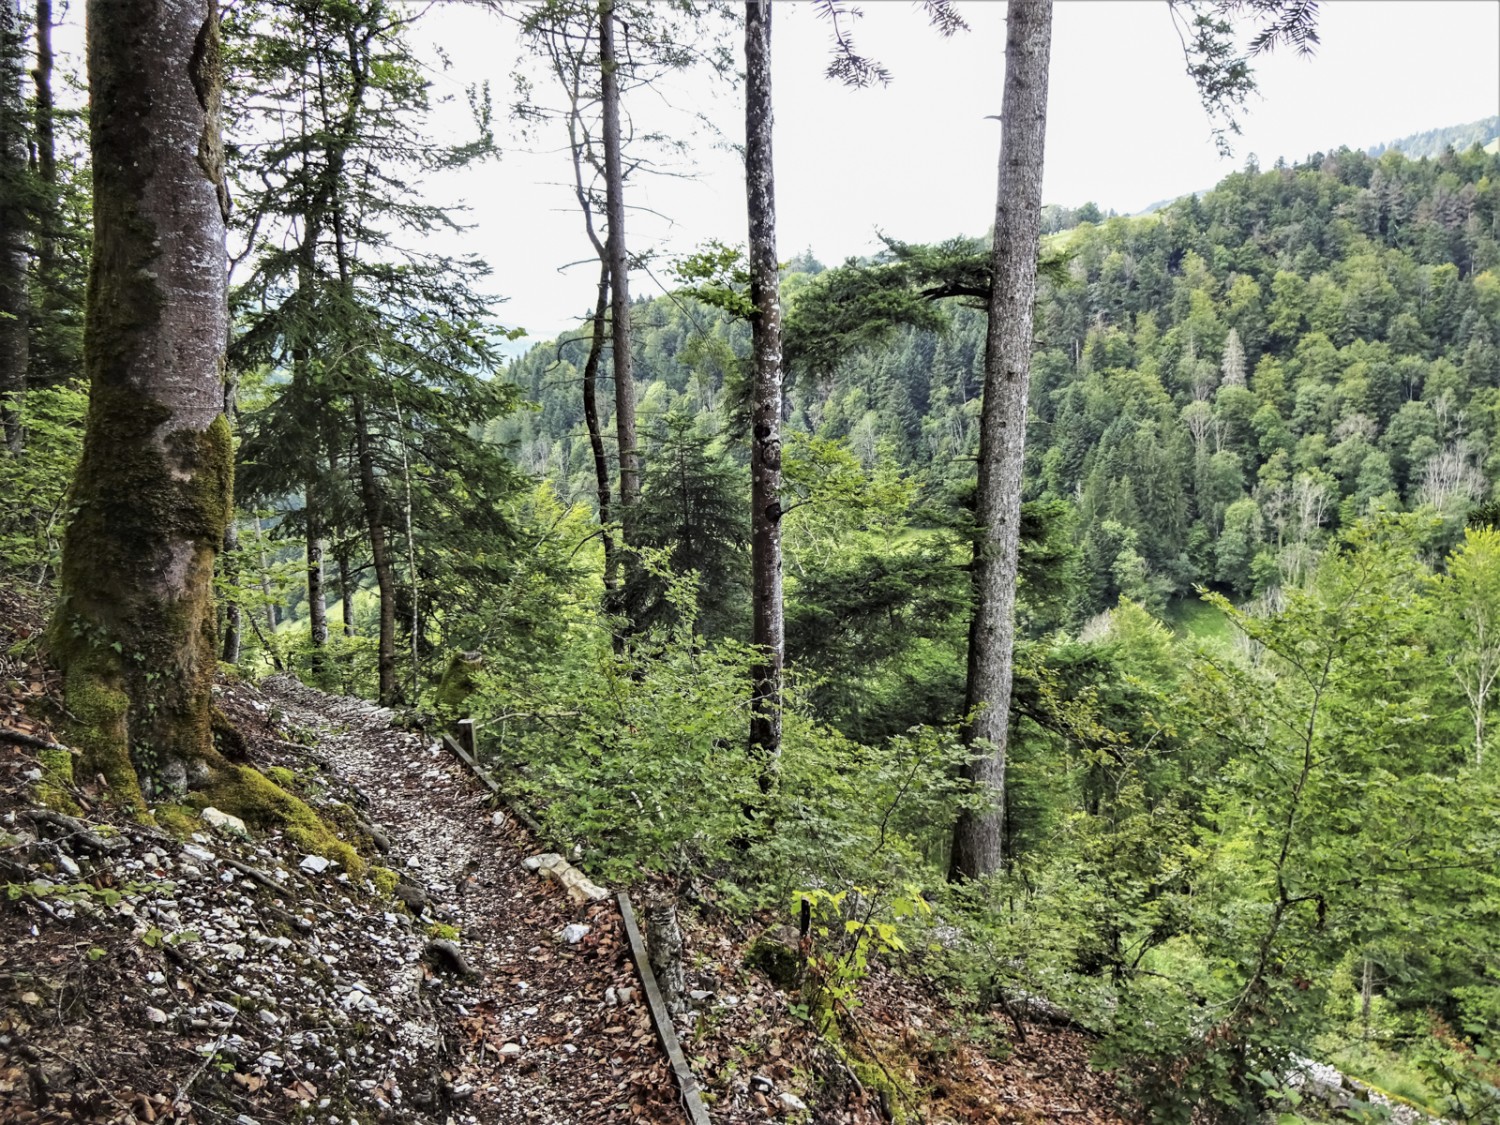 Le sentier, aménagé par les bénévoles de Jura Rando, suit un éperon rocheux avant d’atteindre le Doubs. Photo: Miroslaw Halaba